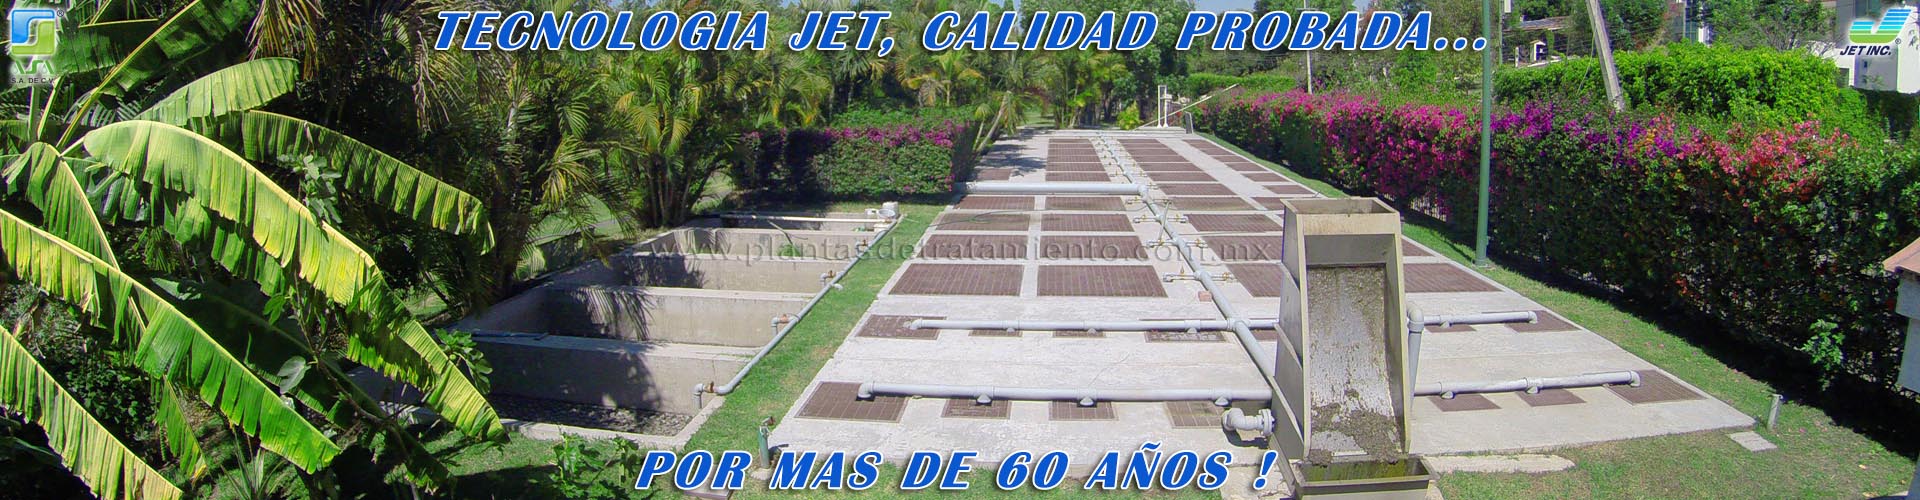 Plantas de Tratamiento para Aguas Residuales en Guadalajara